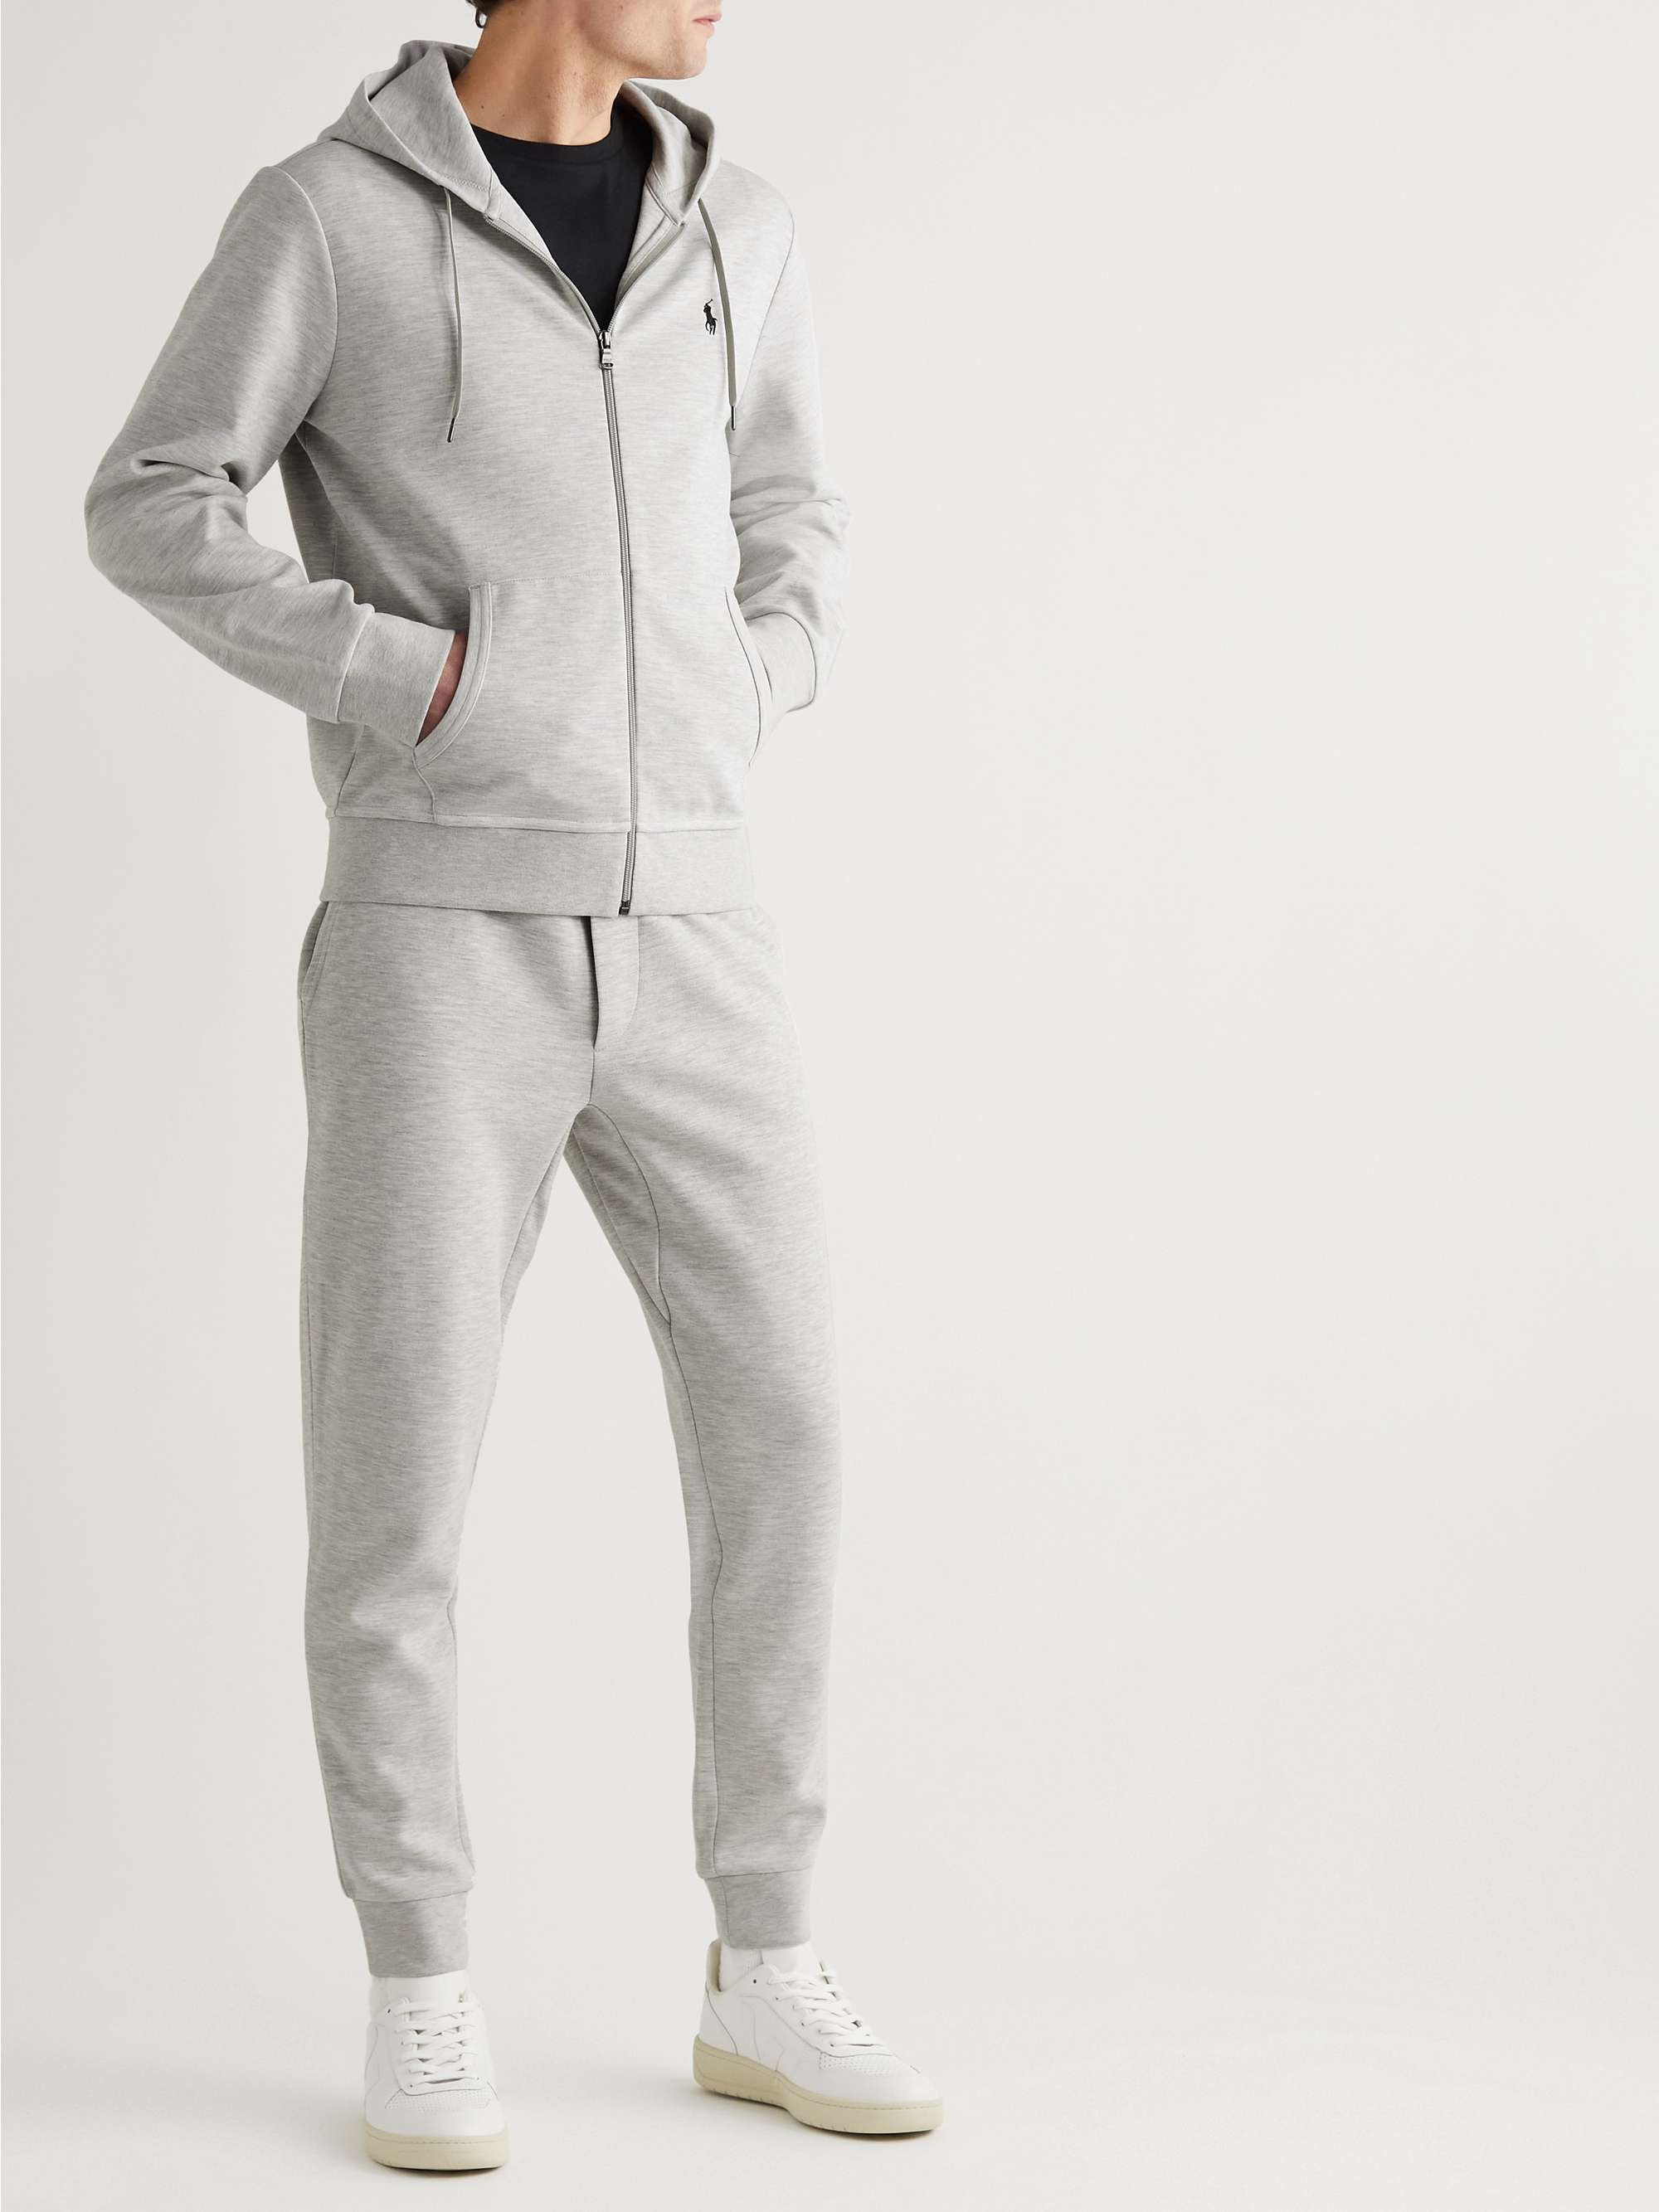 Polo Ralph Lauren Mélange Jersey Zip-Up Hoodie - Men - Light Gray Sweats - XXL